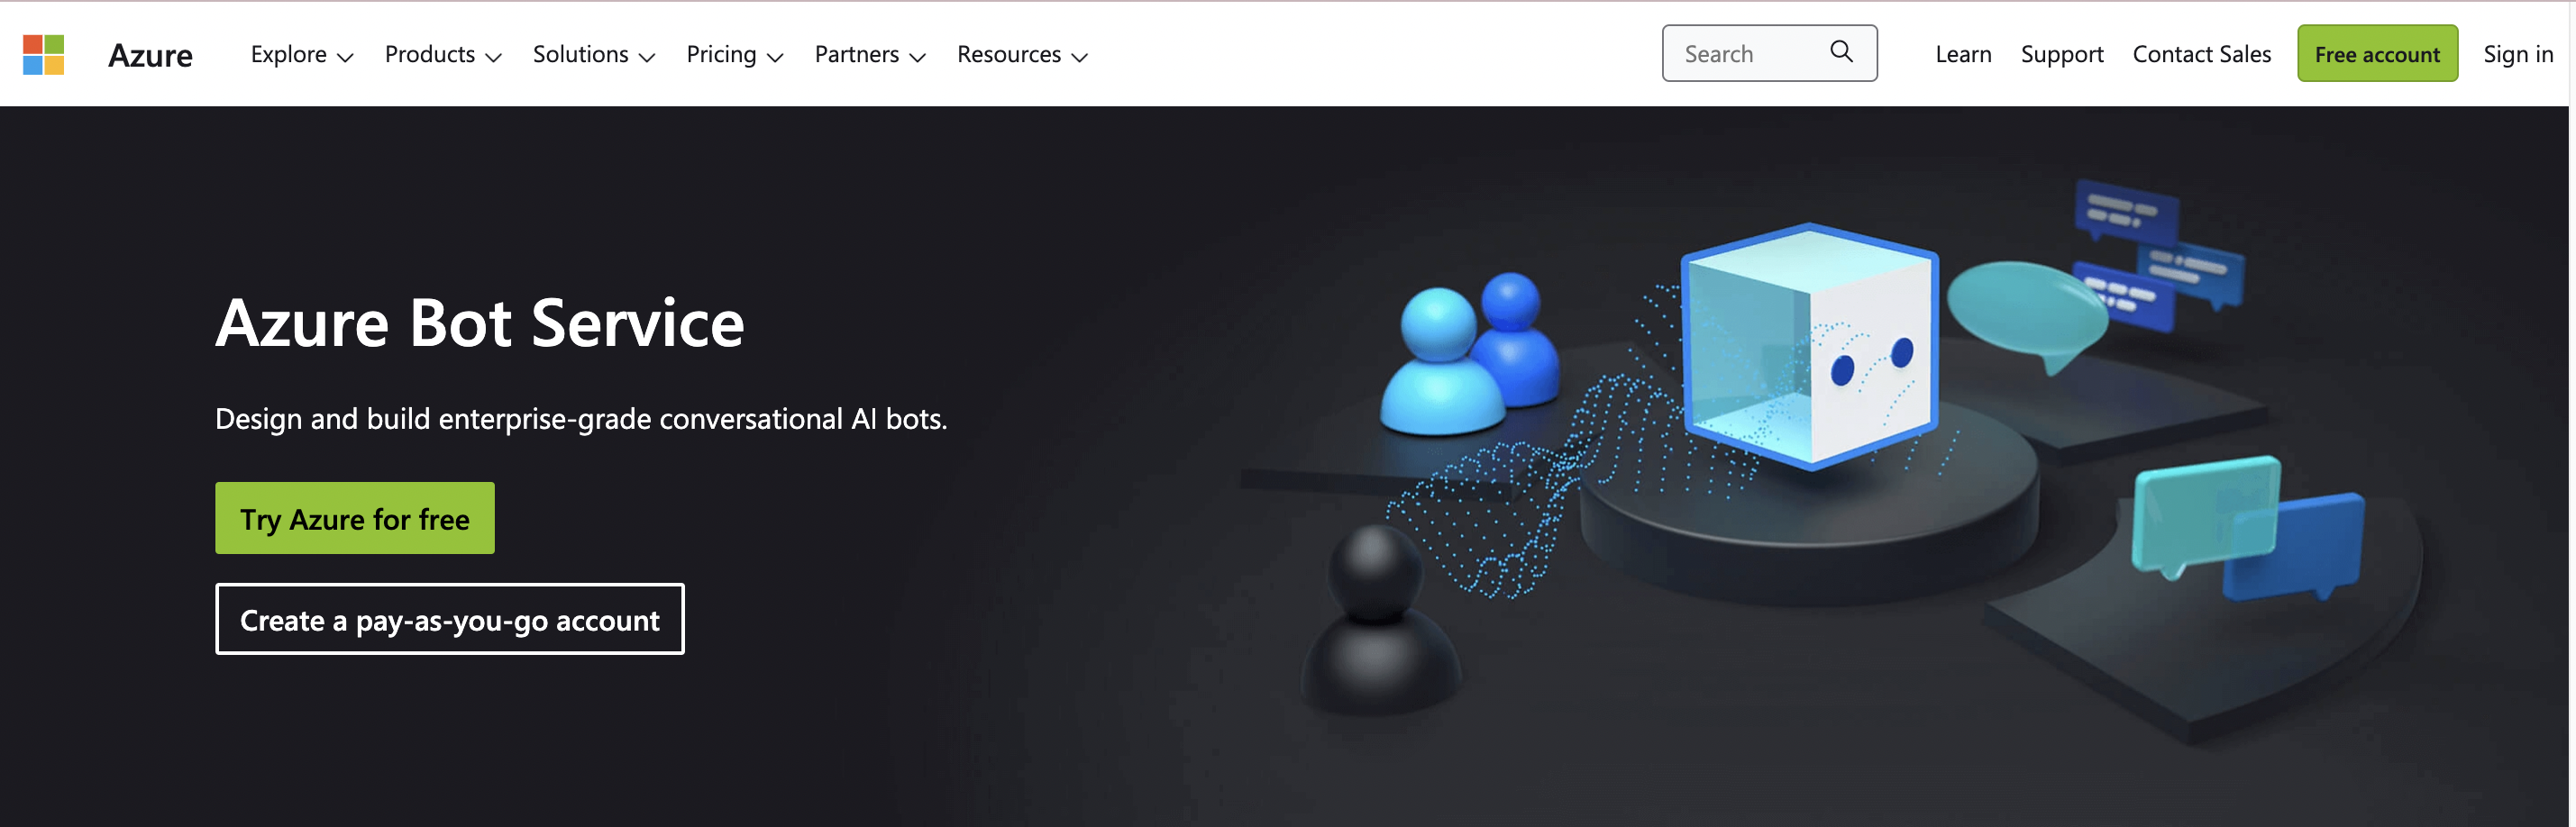 Microsoft Azure Bot Service